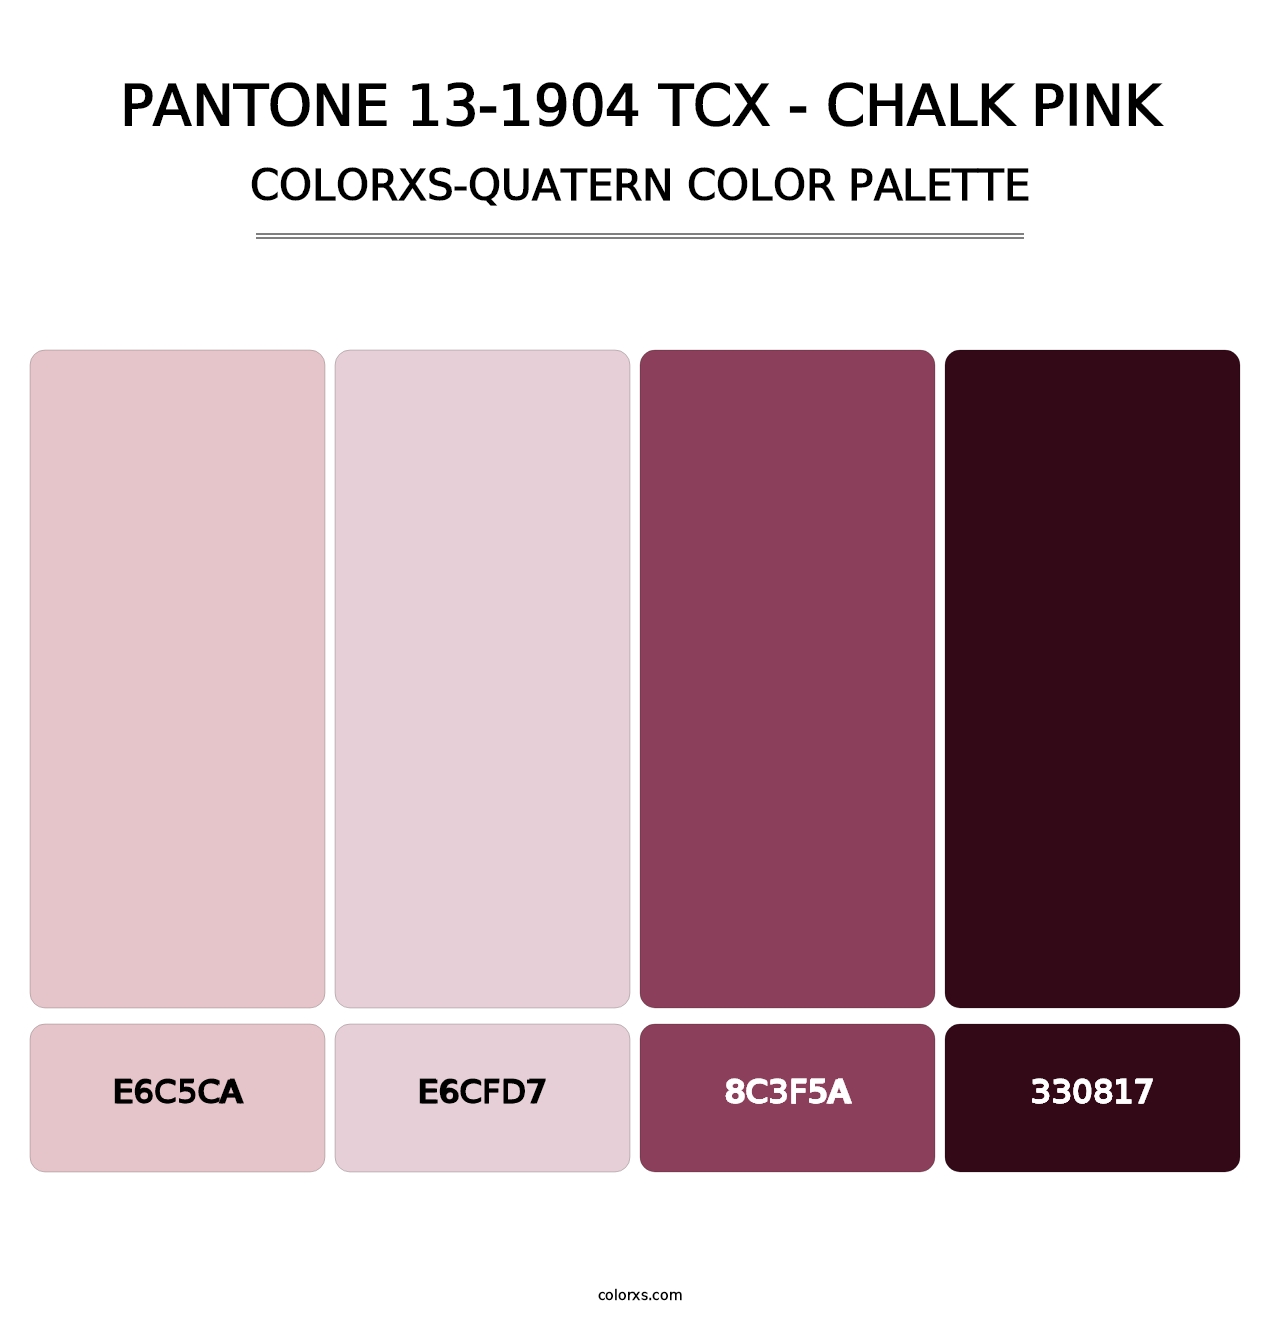 PANTONE 13-1904 TCX - Chalk Pink - Colorxs Quatern Palette